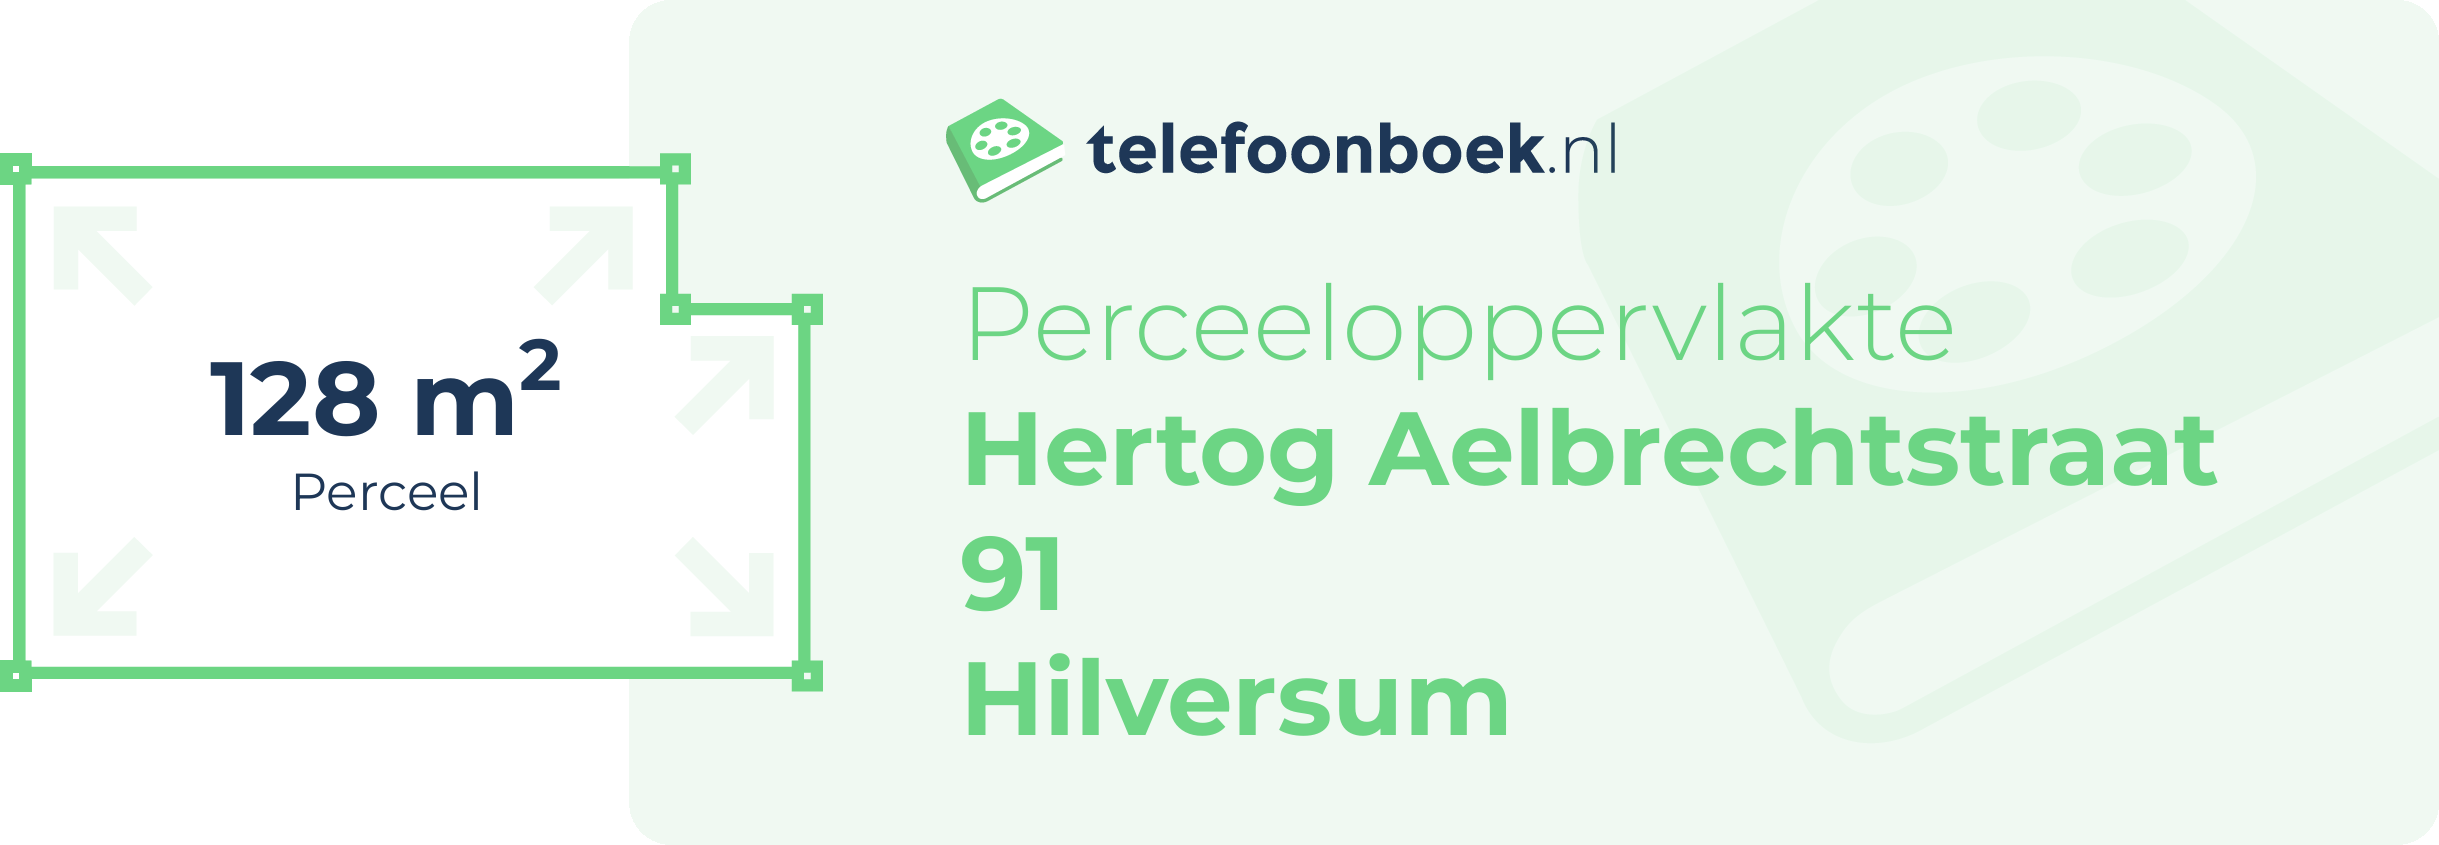 Perceeloppervlakte Hertog Aelbrechtstraat 91 Hilversum